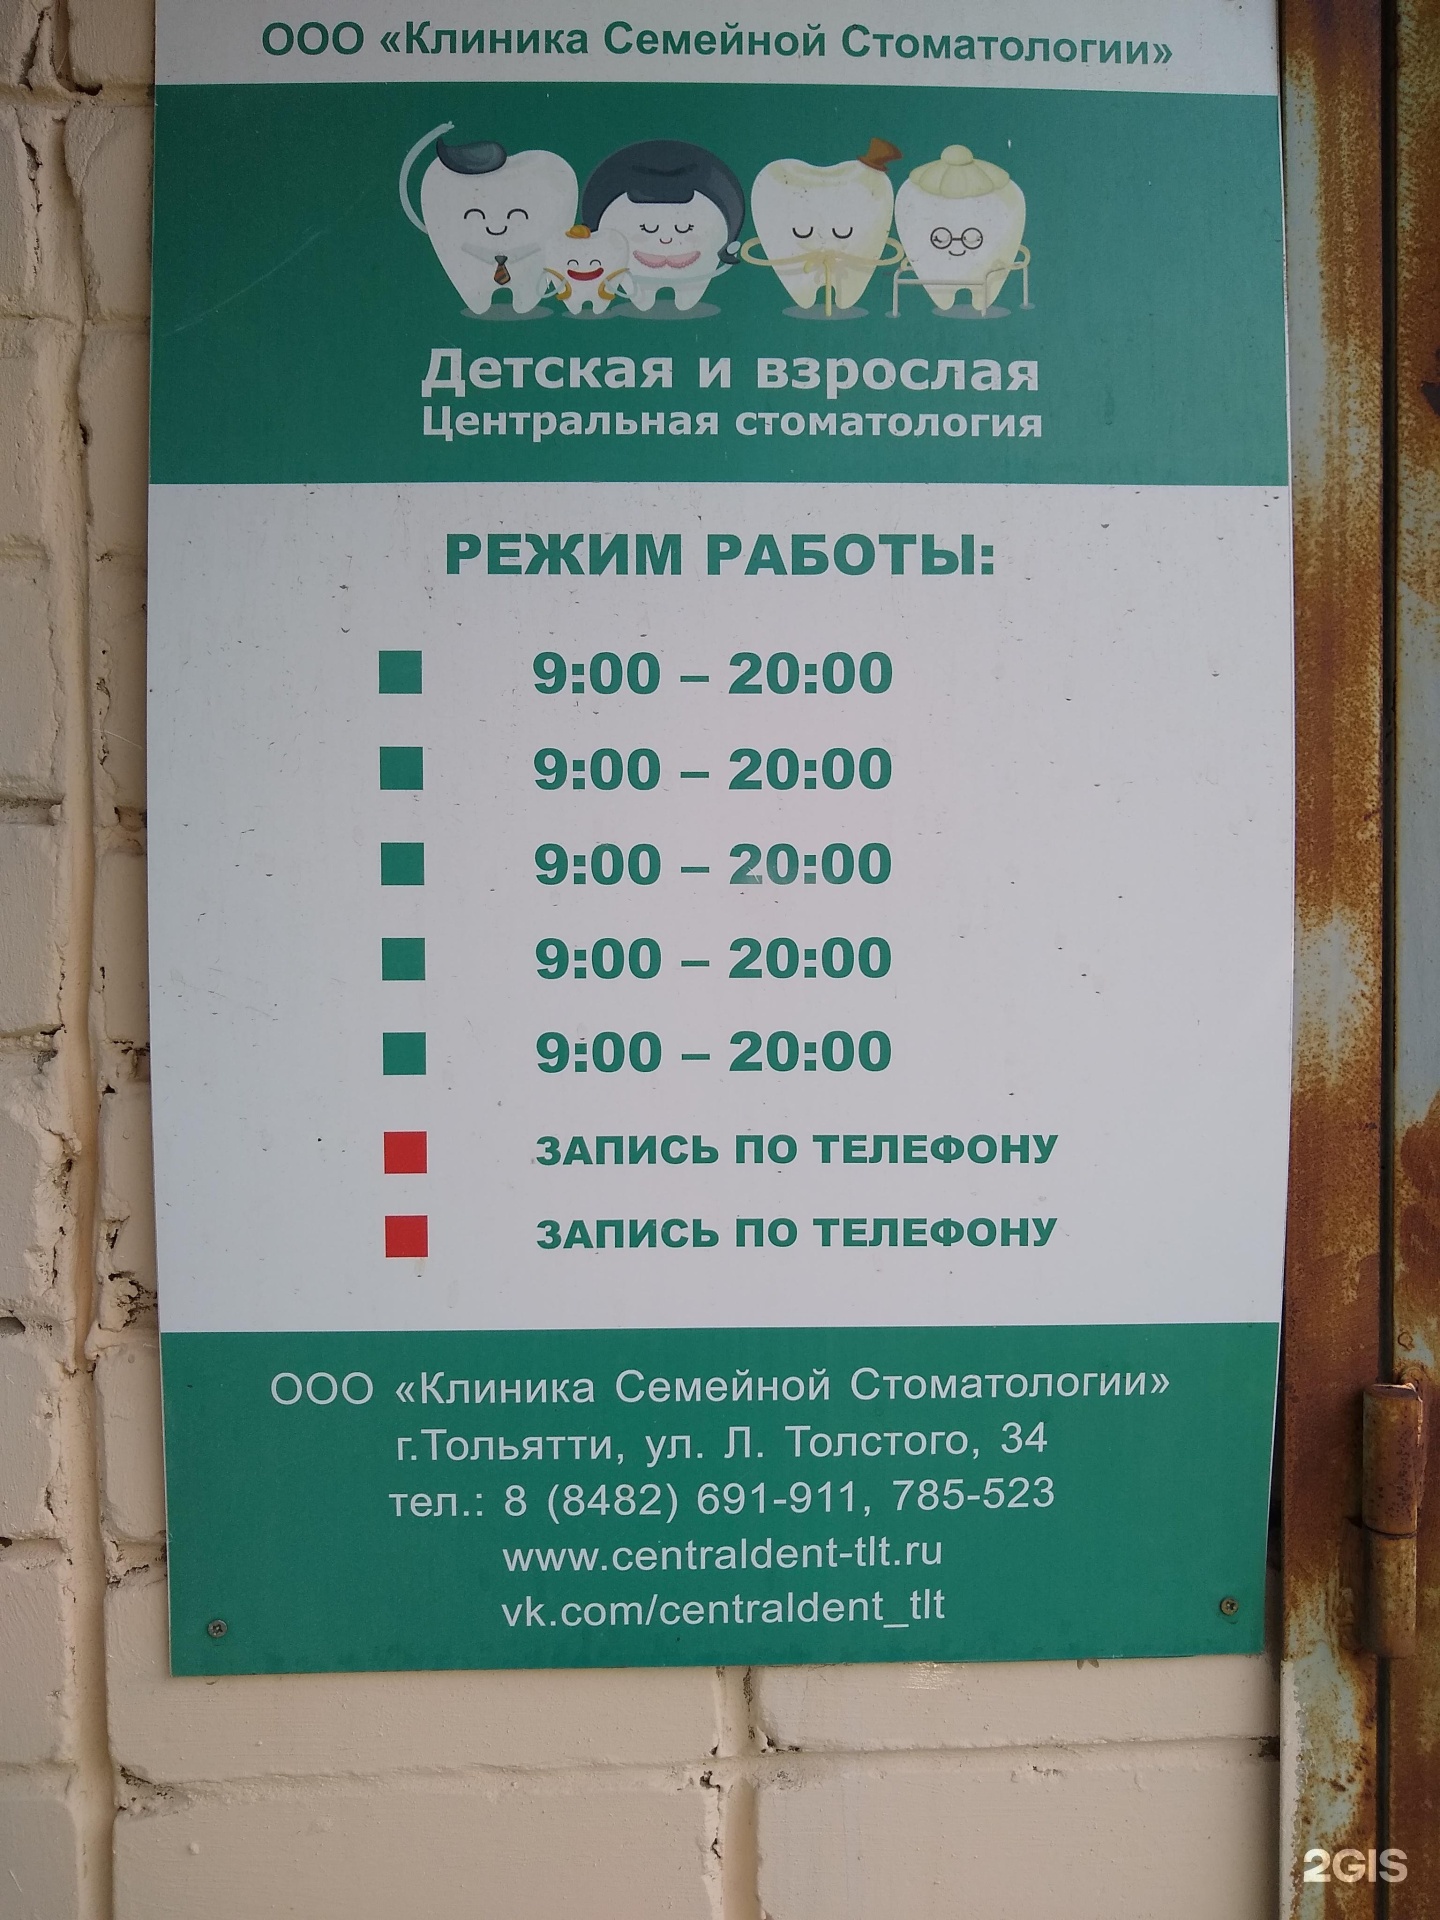 Детская стоматология толстого. Детская и взрослая Центральная стоматология, Тольятти.